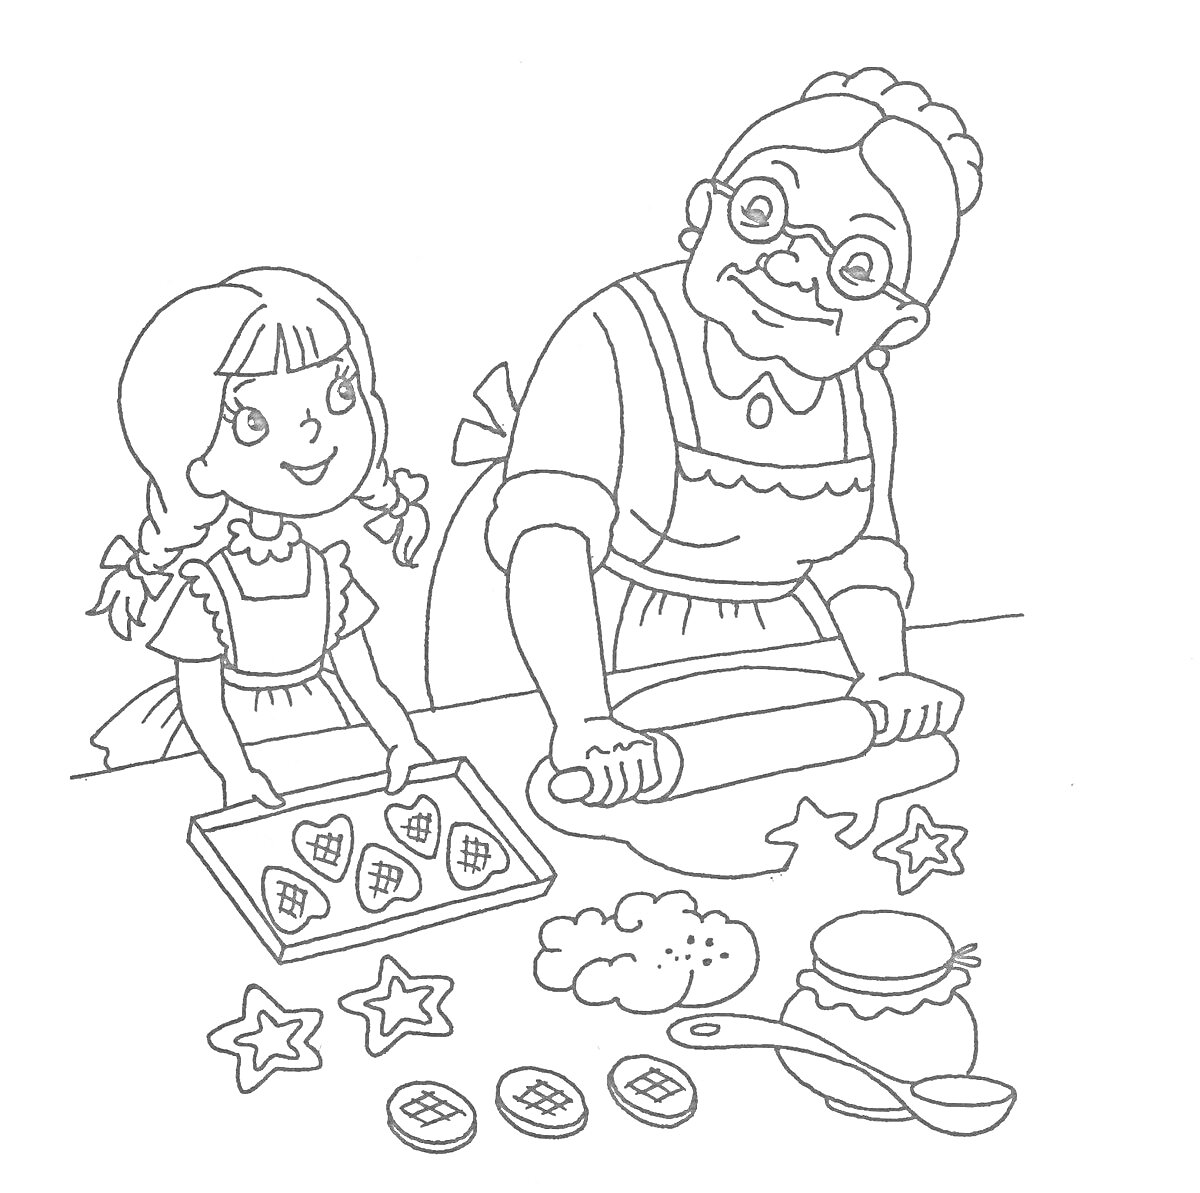 Девочка и бабушка готовят печенье на кухне